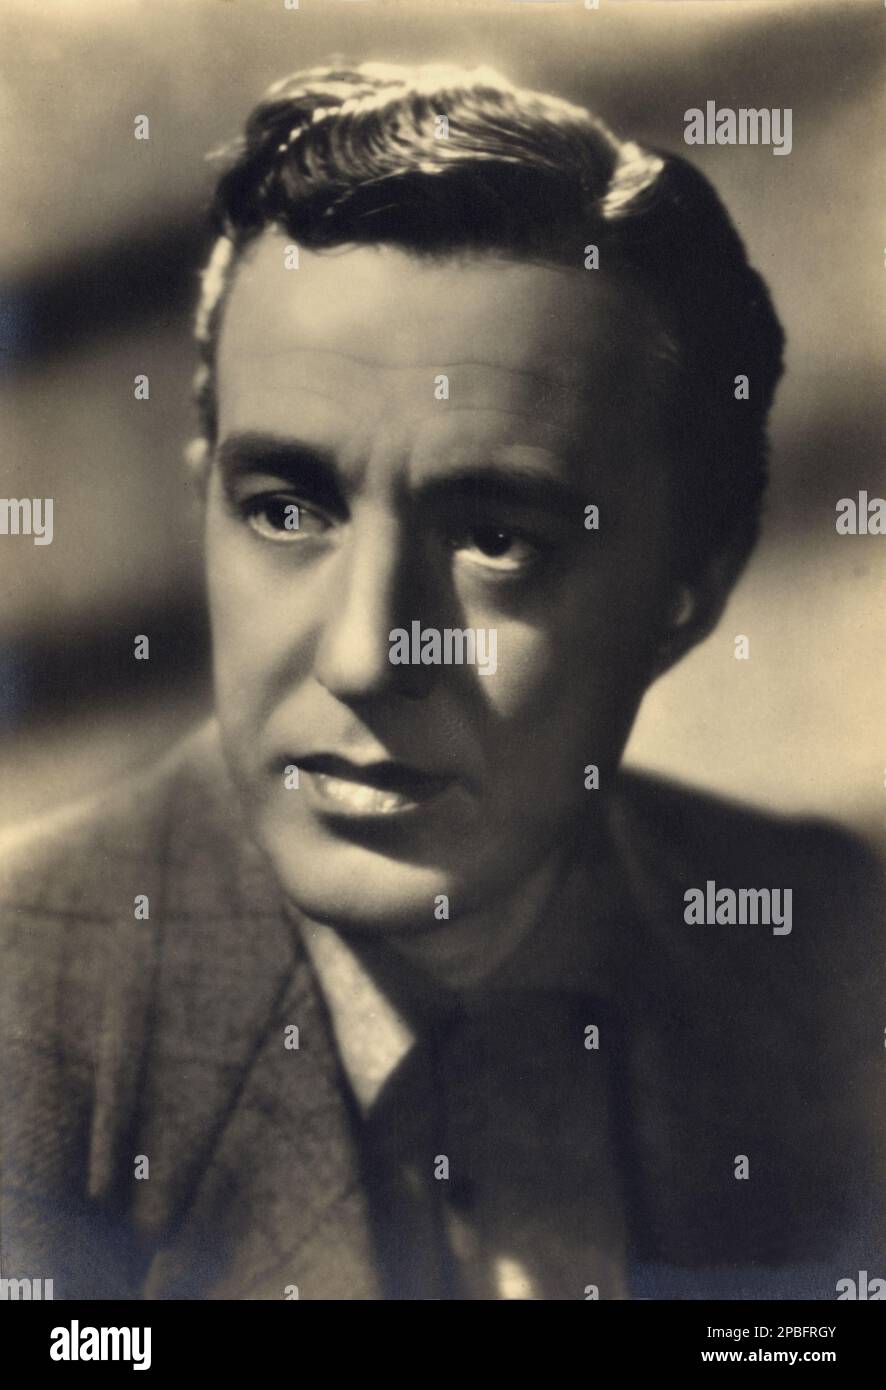 1943 ca  : The  italian movie actor and director VITTORIO DE SICA ( 1901 - 1974 ) - CINEMA - ATTORE CINEMATOGRAFICO -  REGISTA  - brillantina - grease  ----  Archivio GBB      Archivio Stock Photo